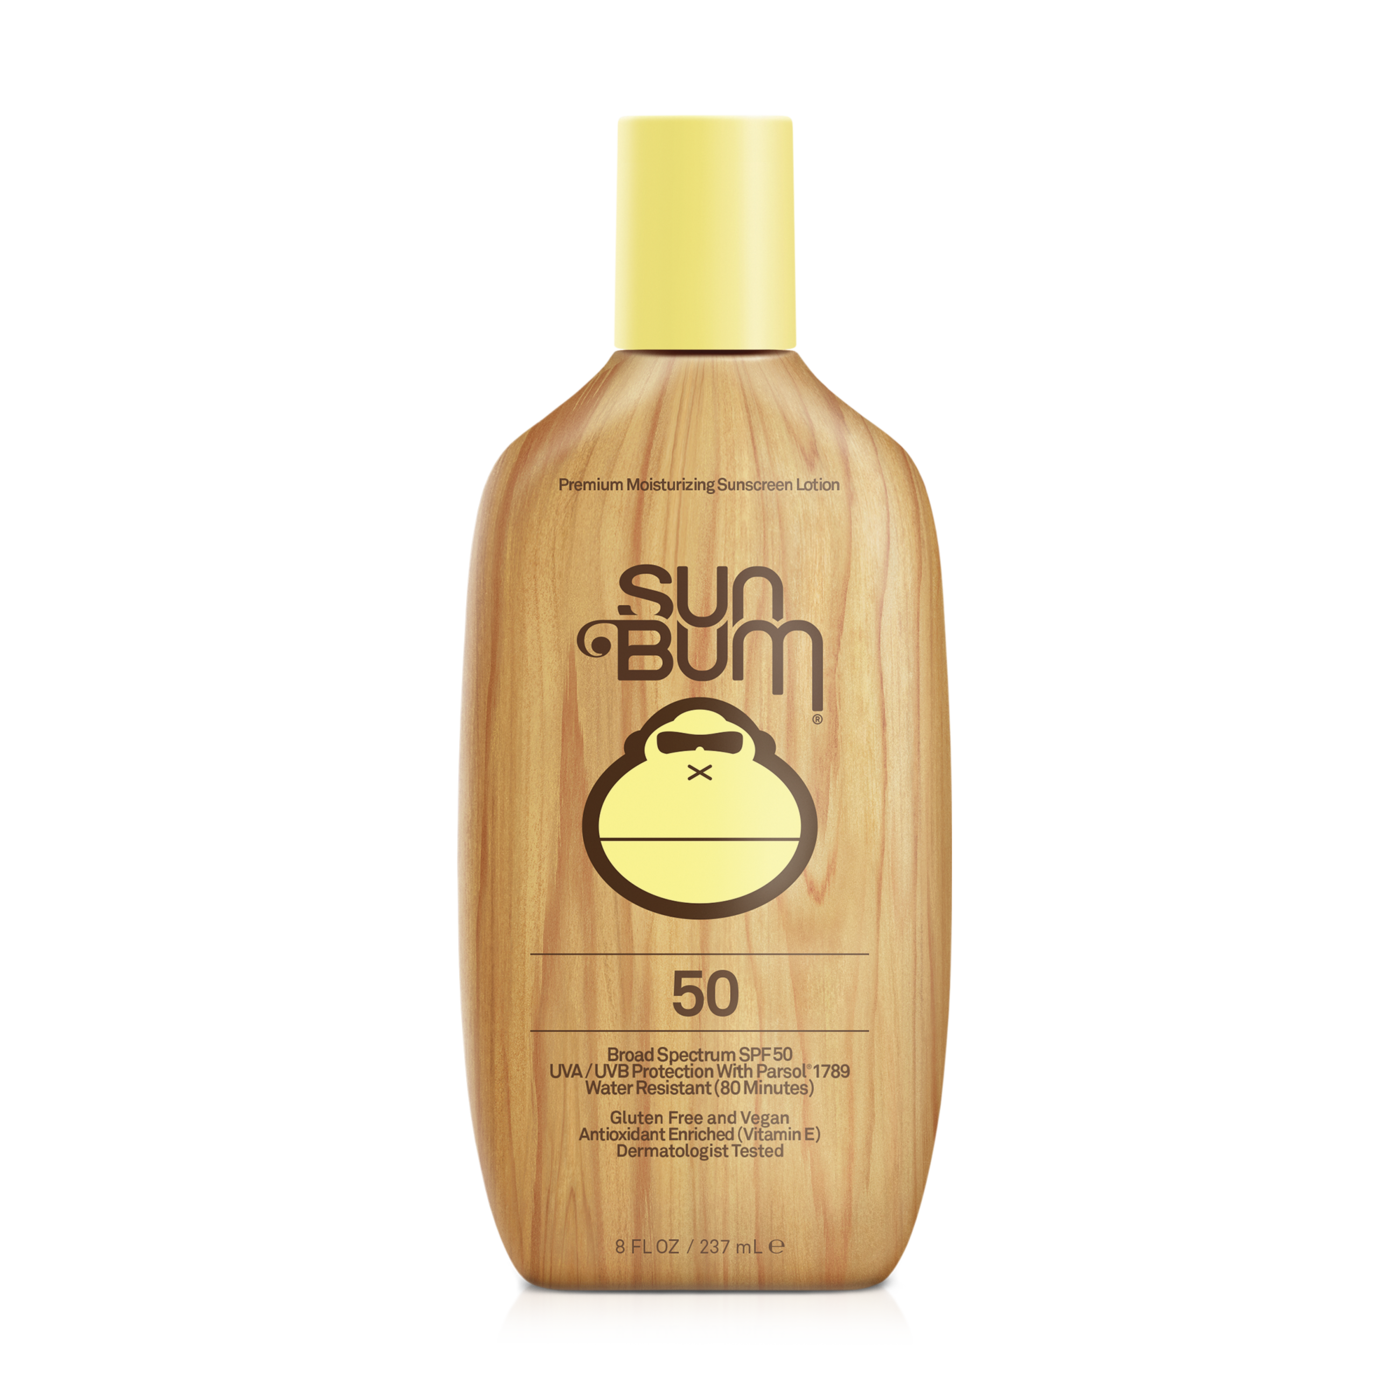 Sun Bum Suncreen Lotion 50 SPF